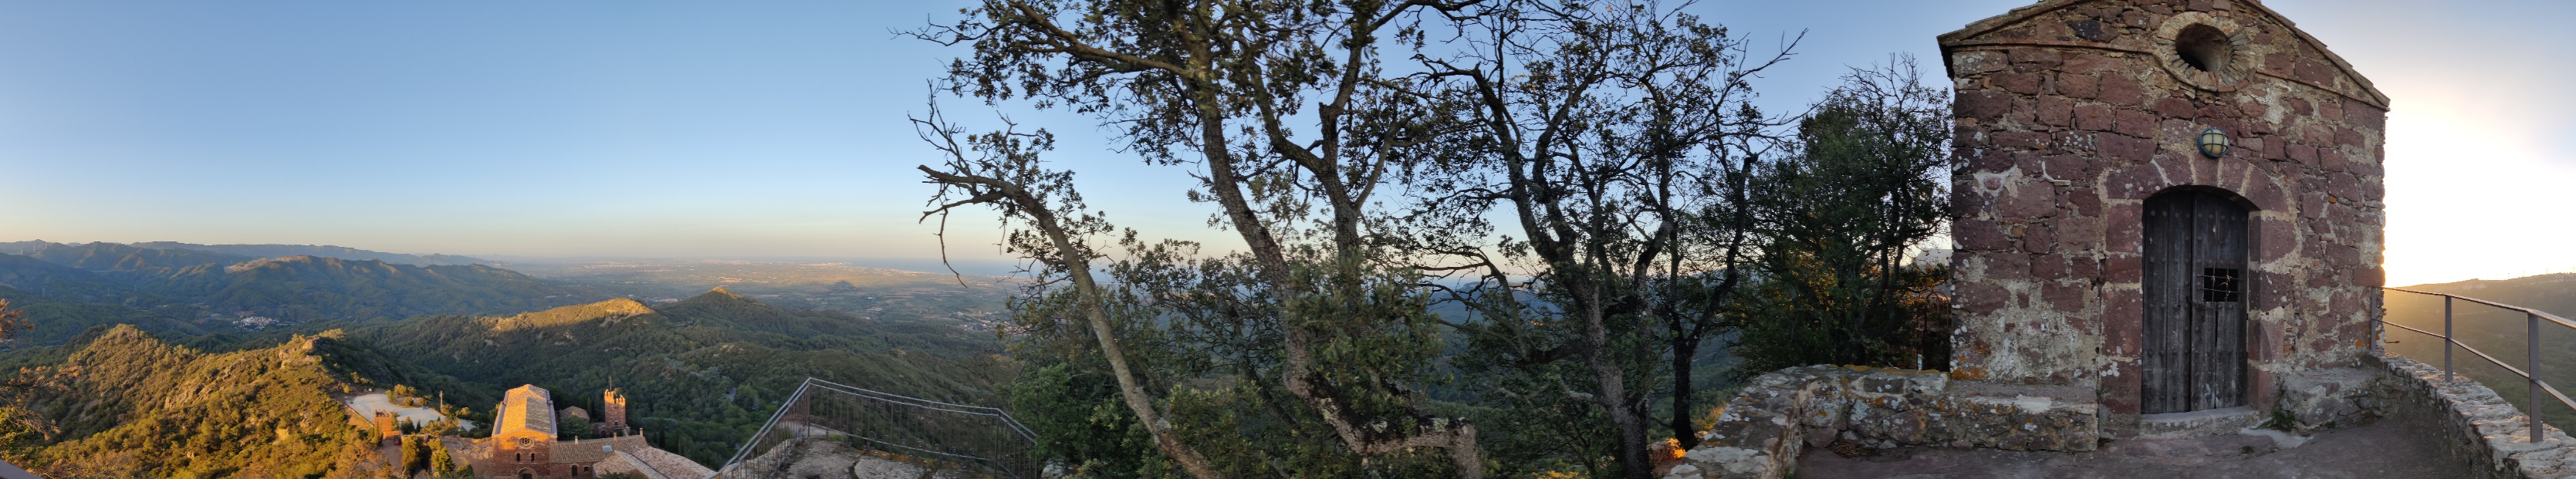 Vistas desde la cima de Santa Bárbara (Escornalbou) (641 m)